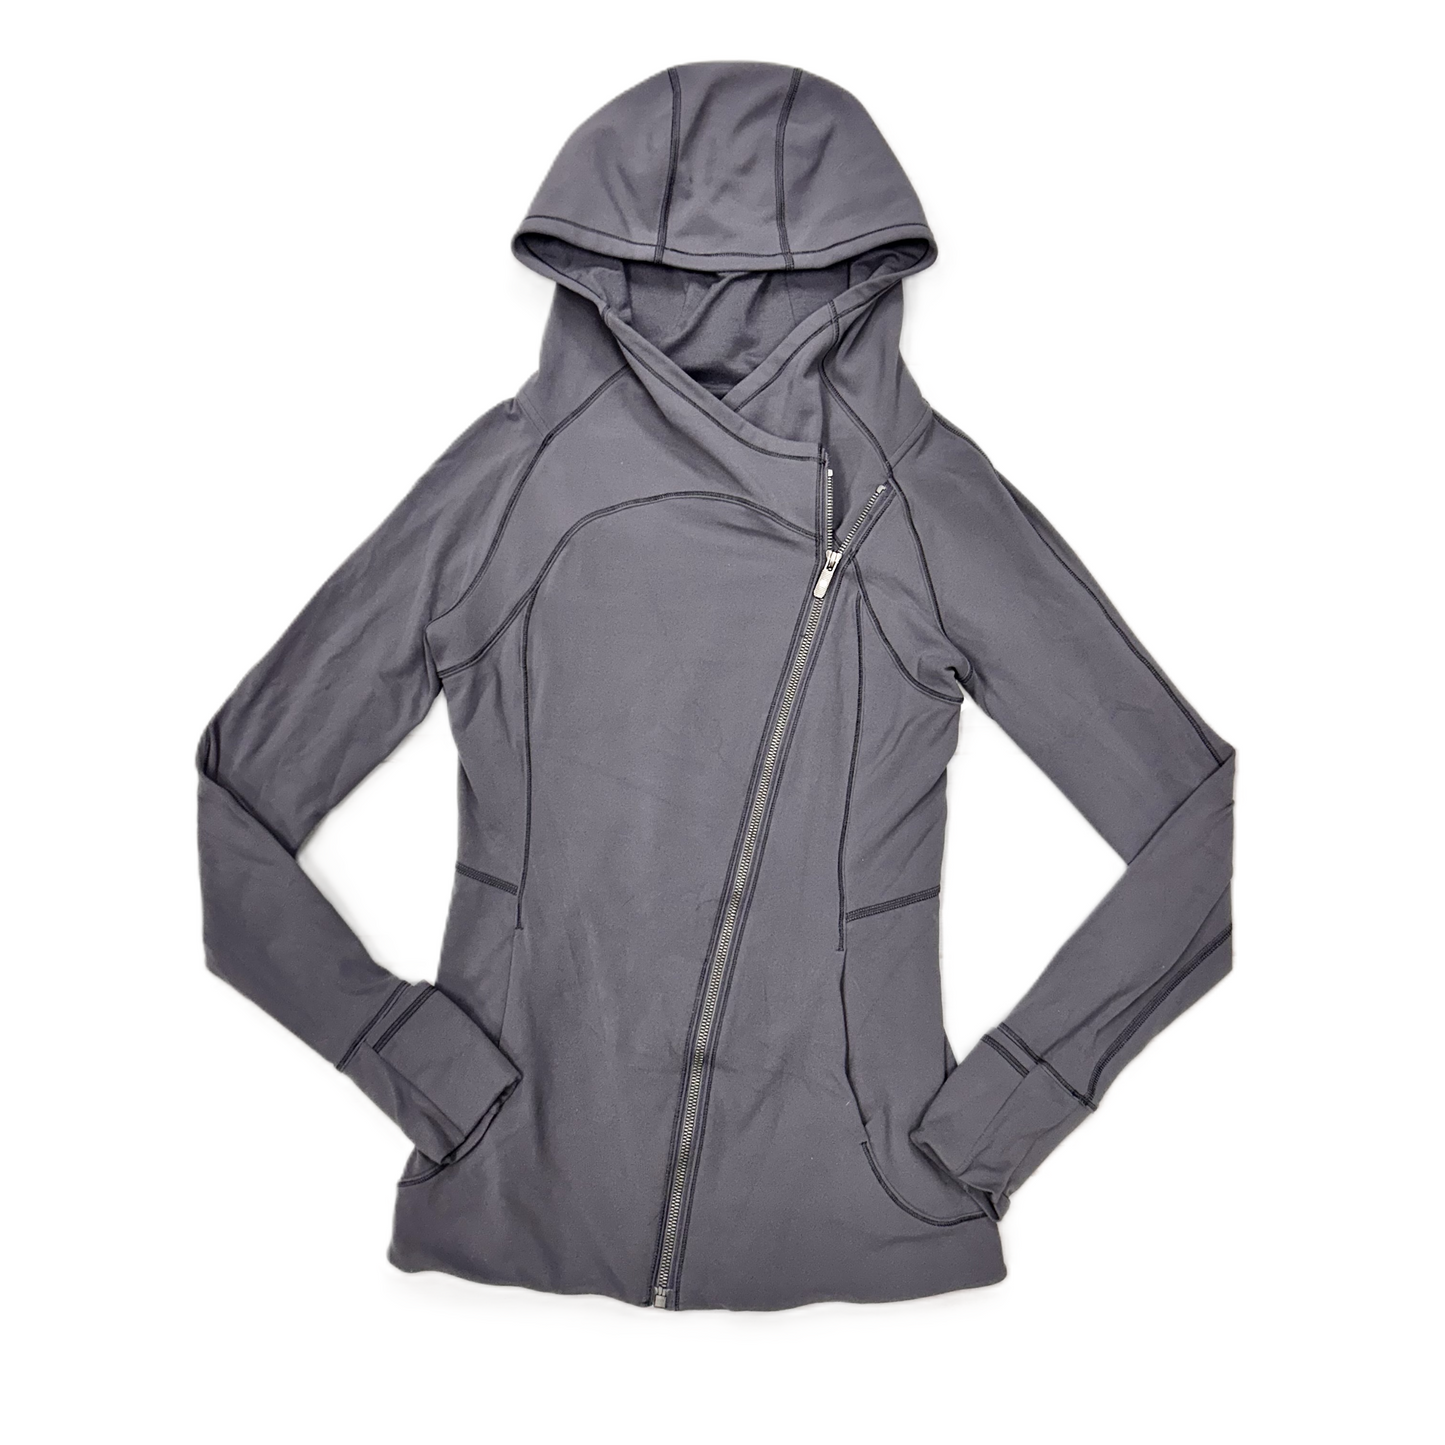 Grey Athletic Jacket By Lululemon, Size: S